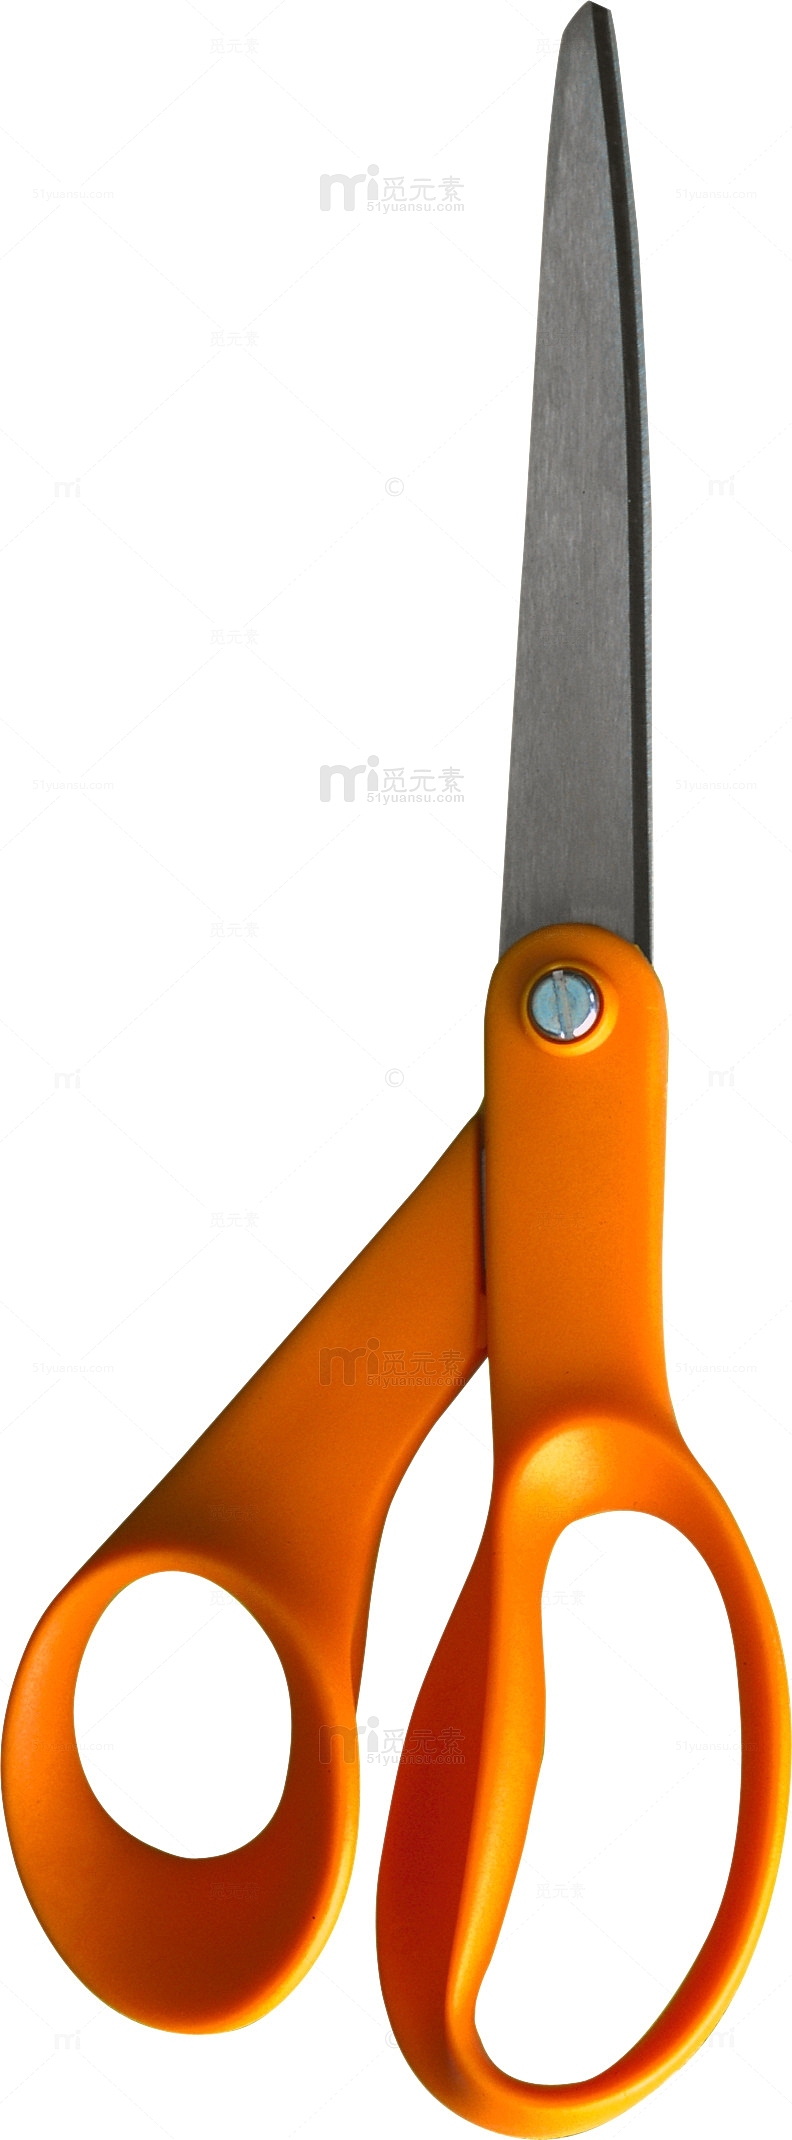 橙色剪刀